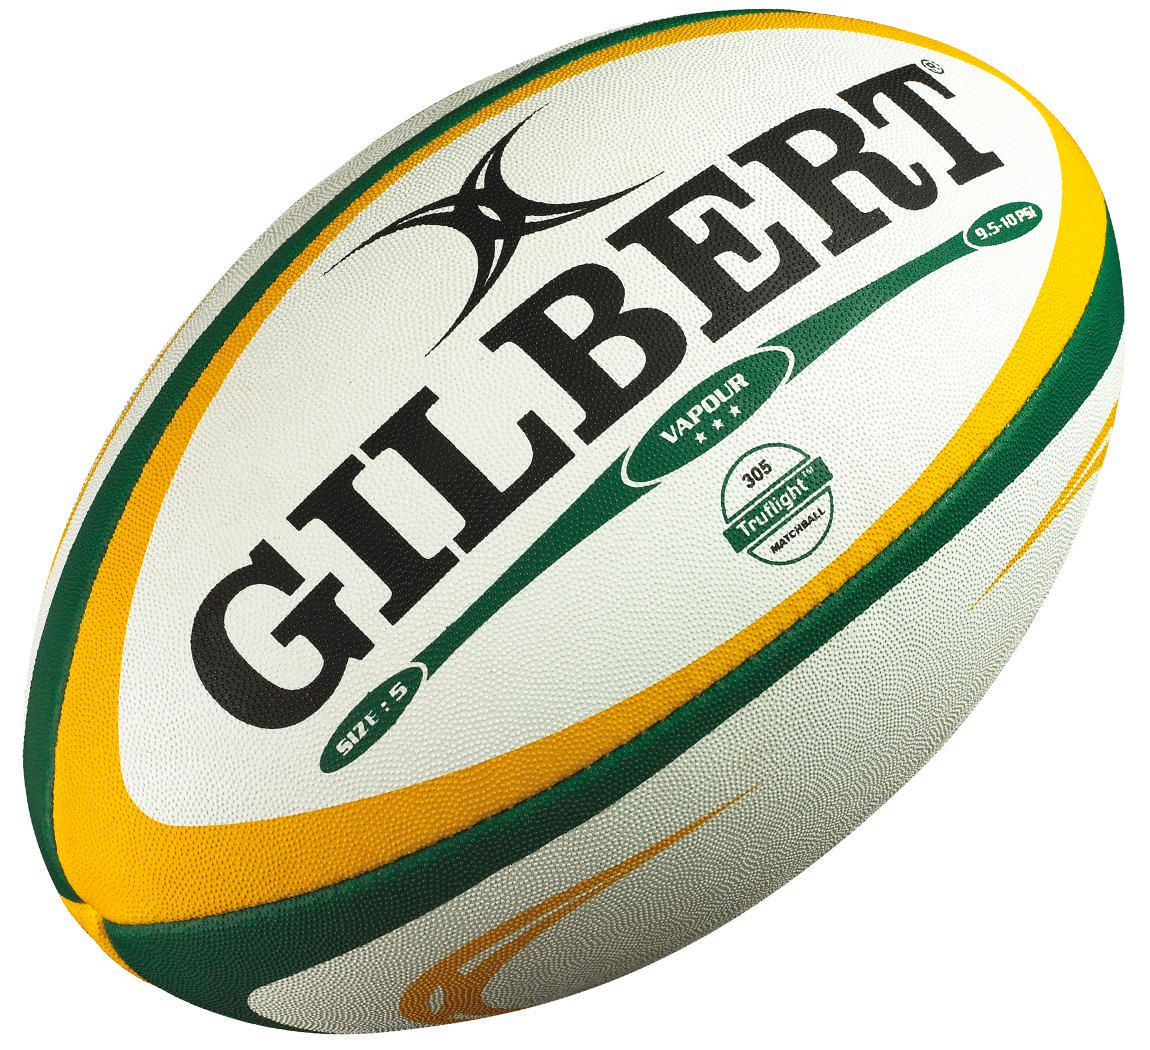 Tee rugby Adjustable Gilbert bleu vert